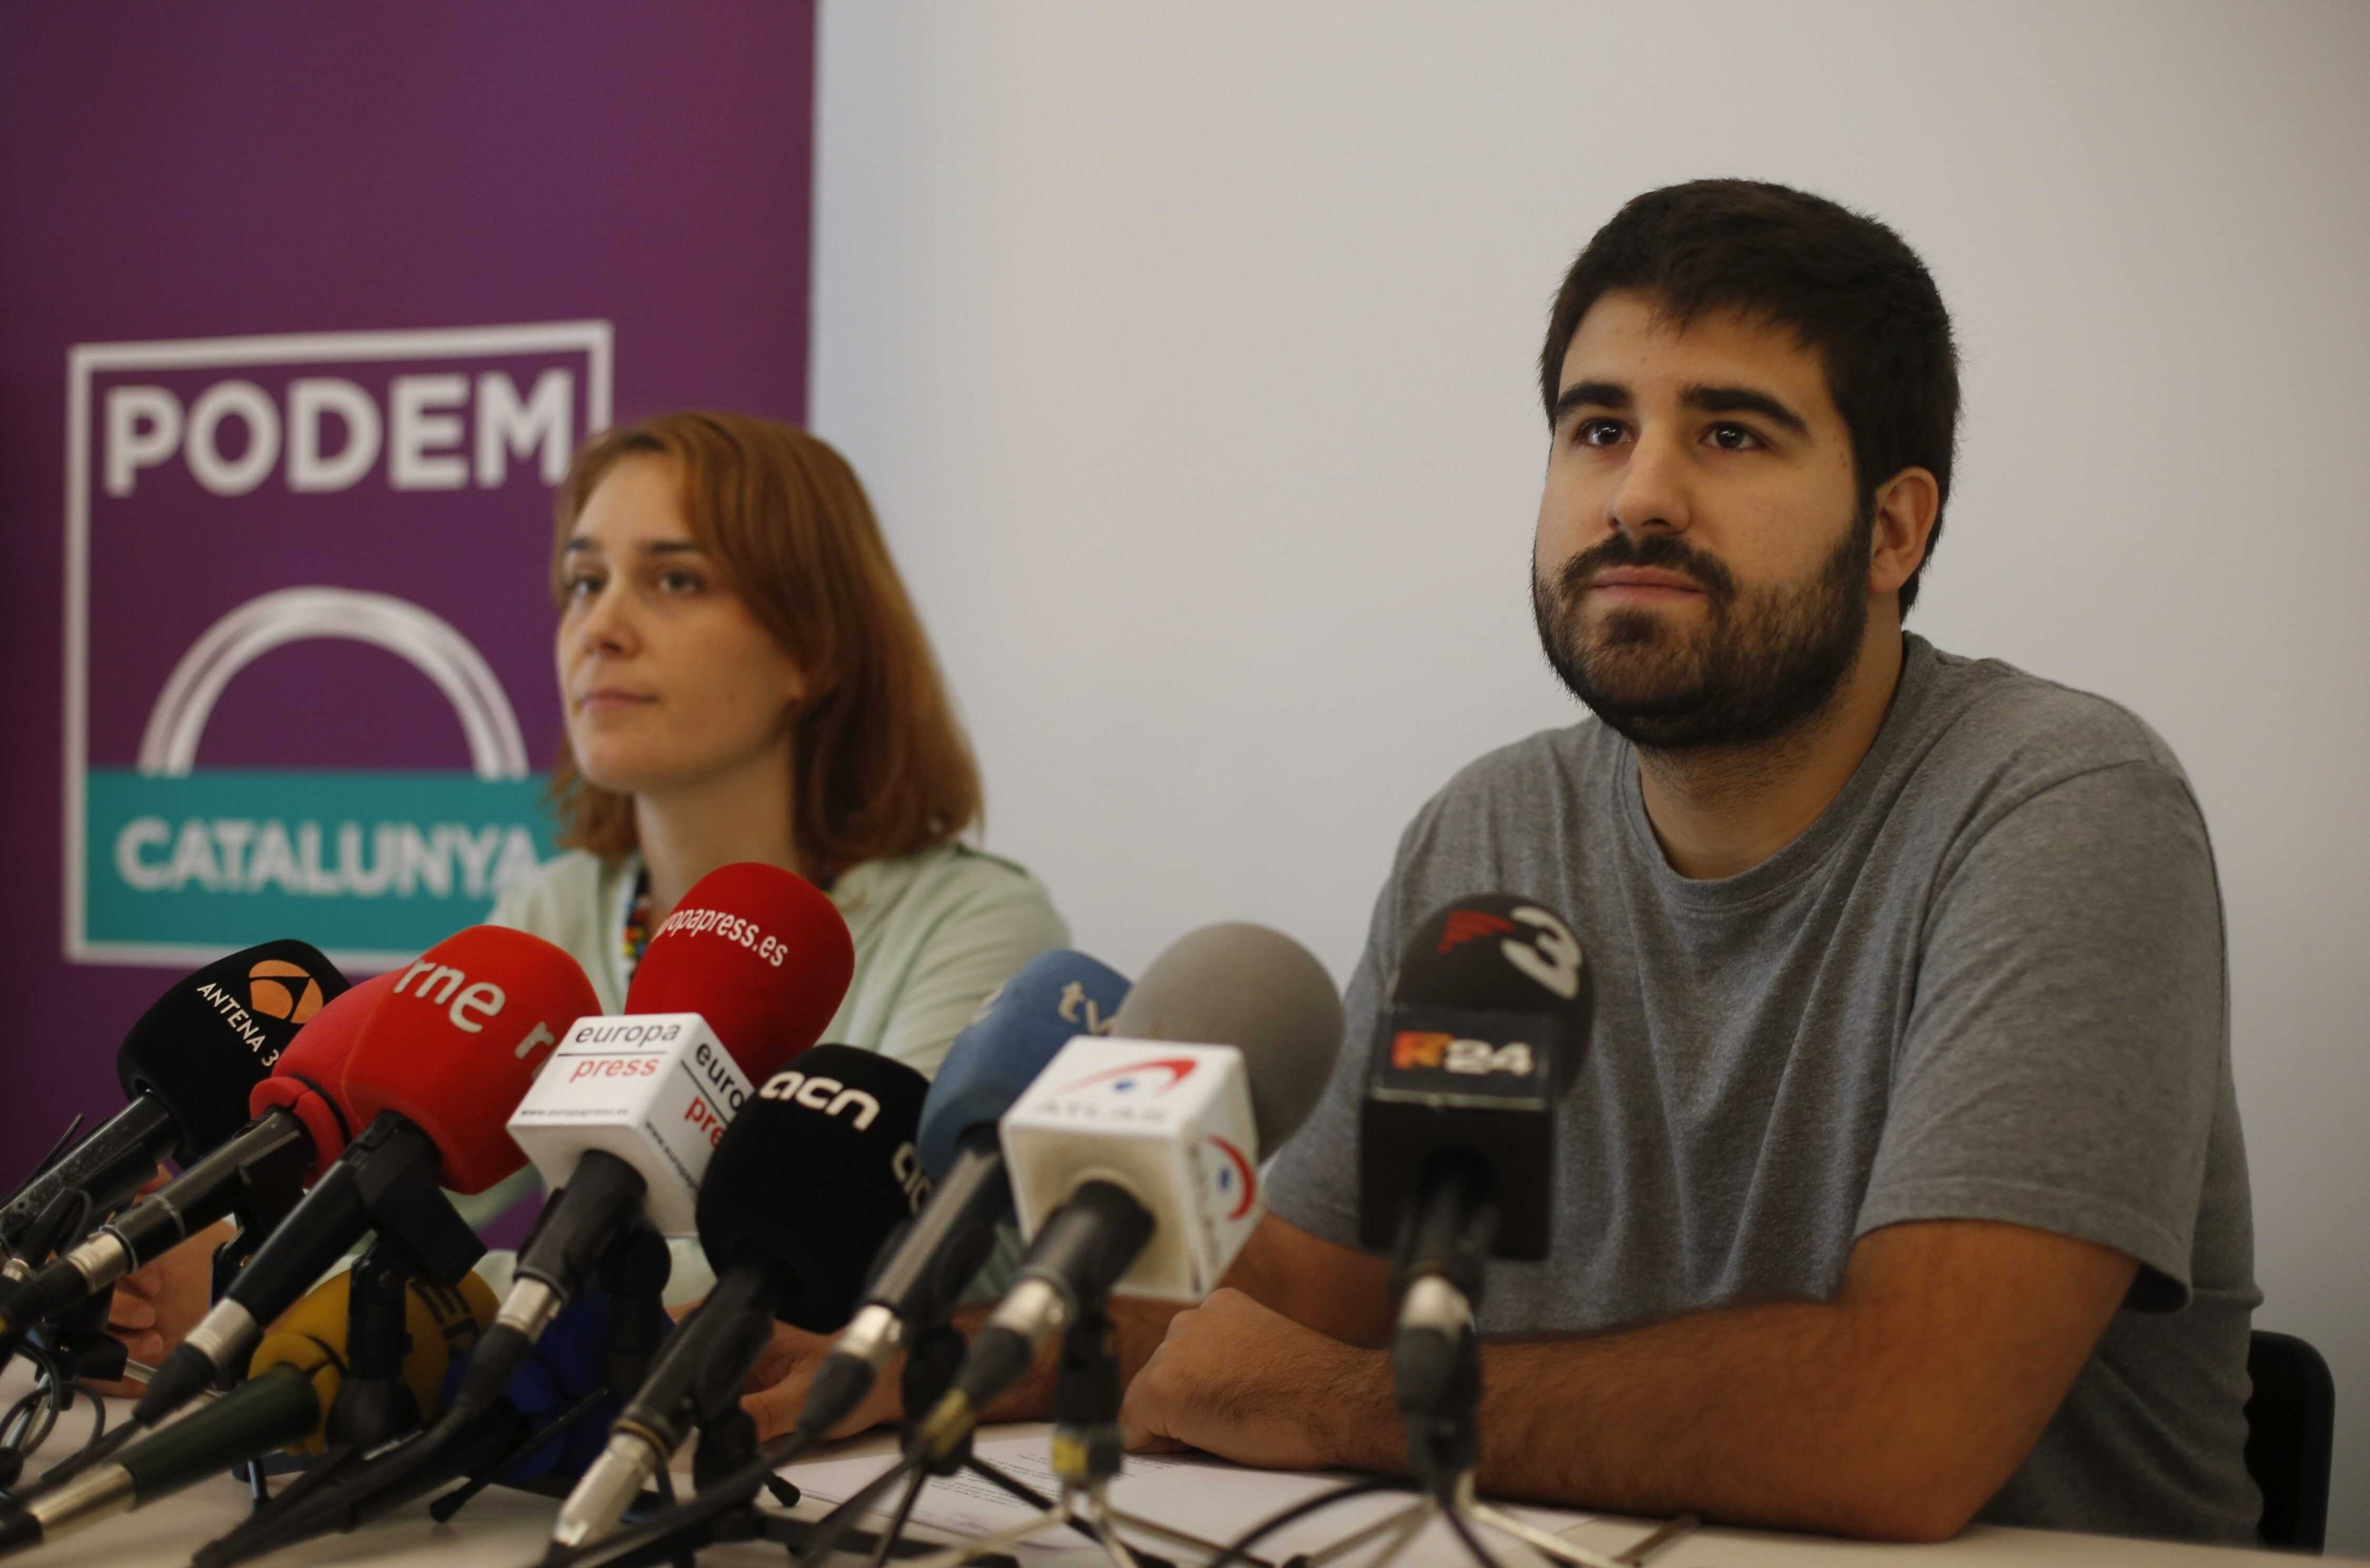 Guerra abierta entre facciones por el liderazgo de Podem en Catalunya